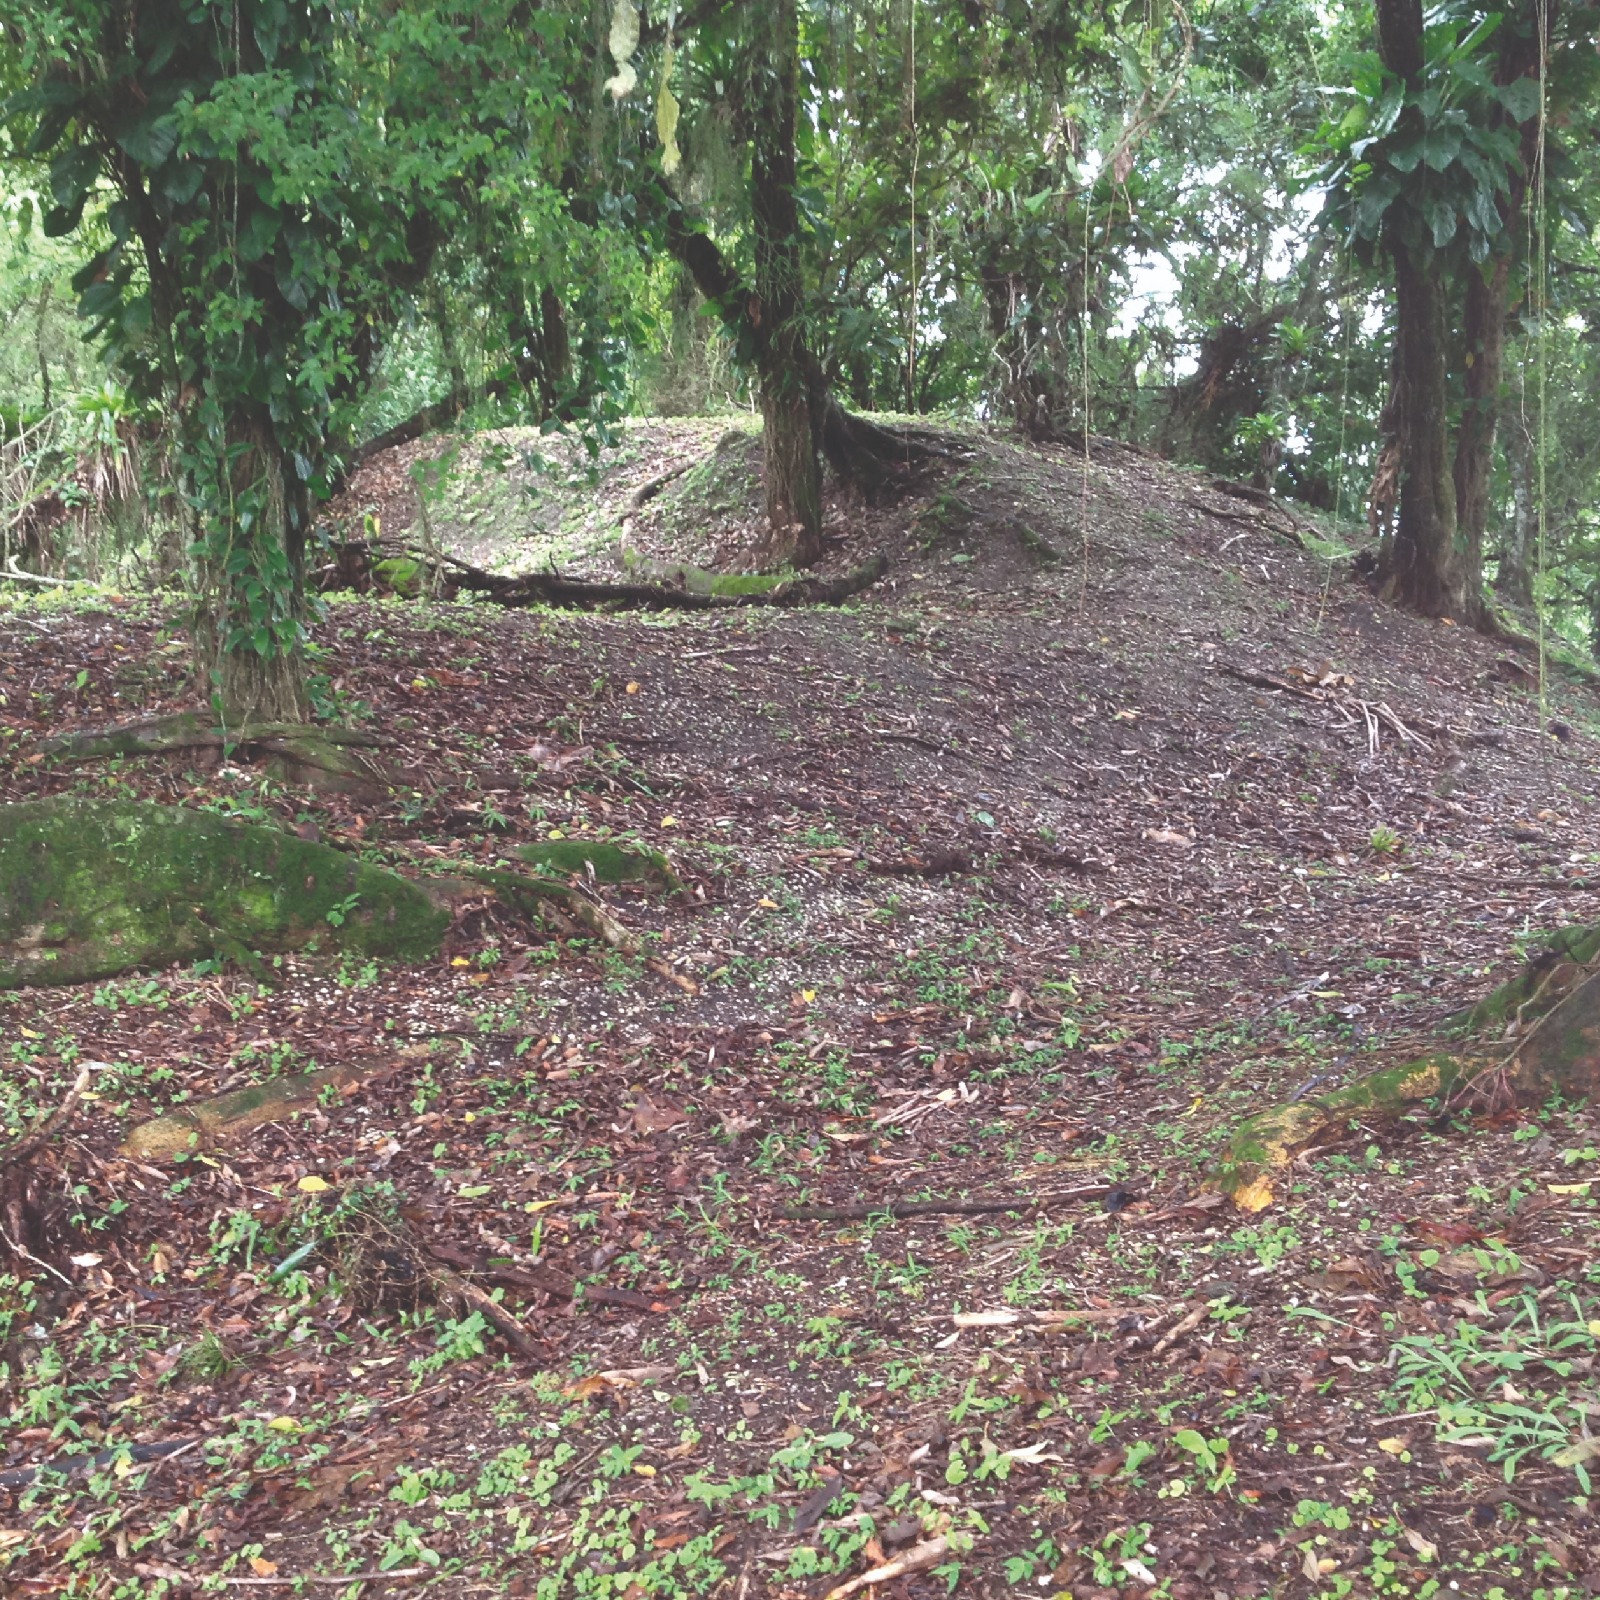 Foto do terreno e de árvores no Sambaqui Ilha dos Espinheiros II, localizado em Joinville.